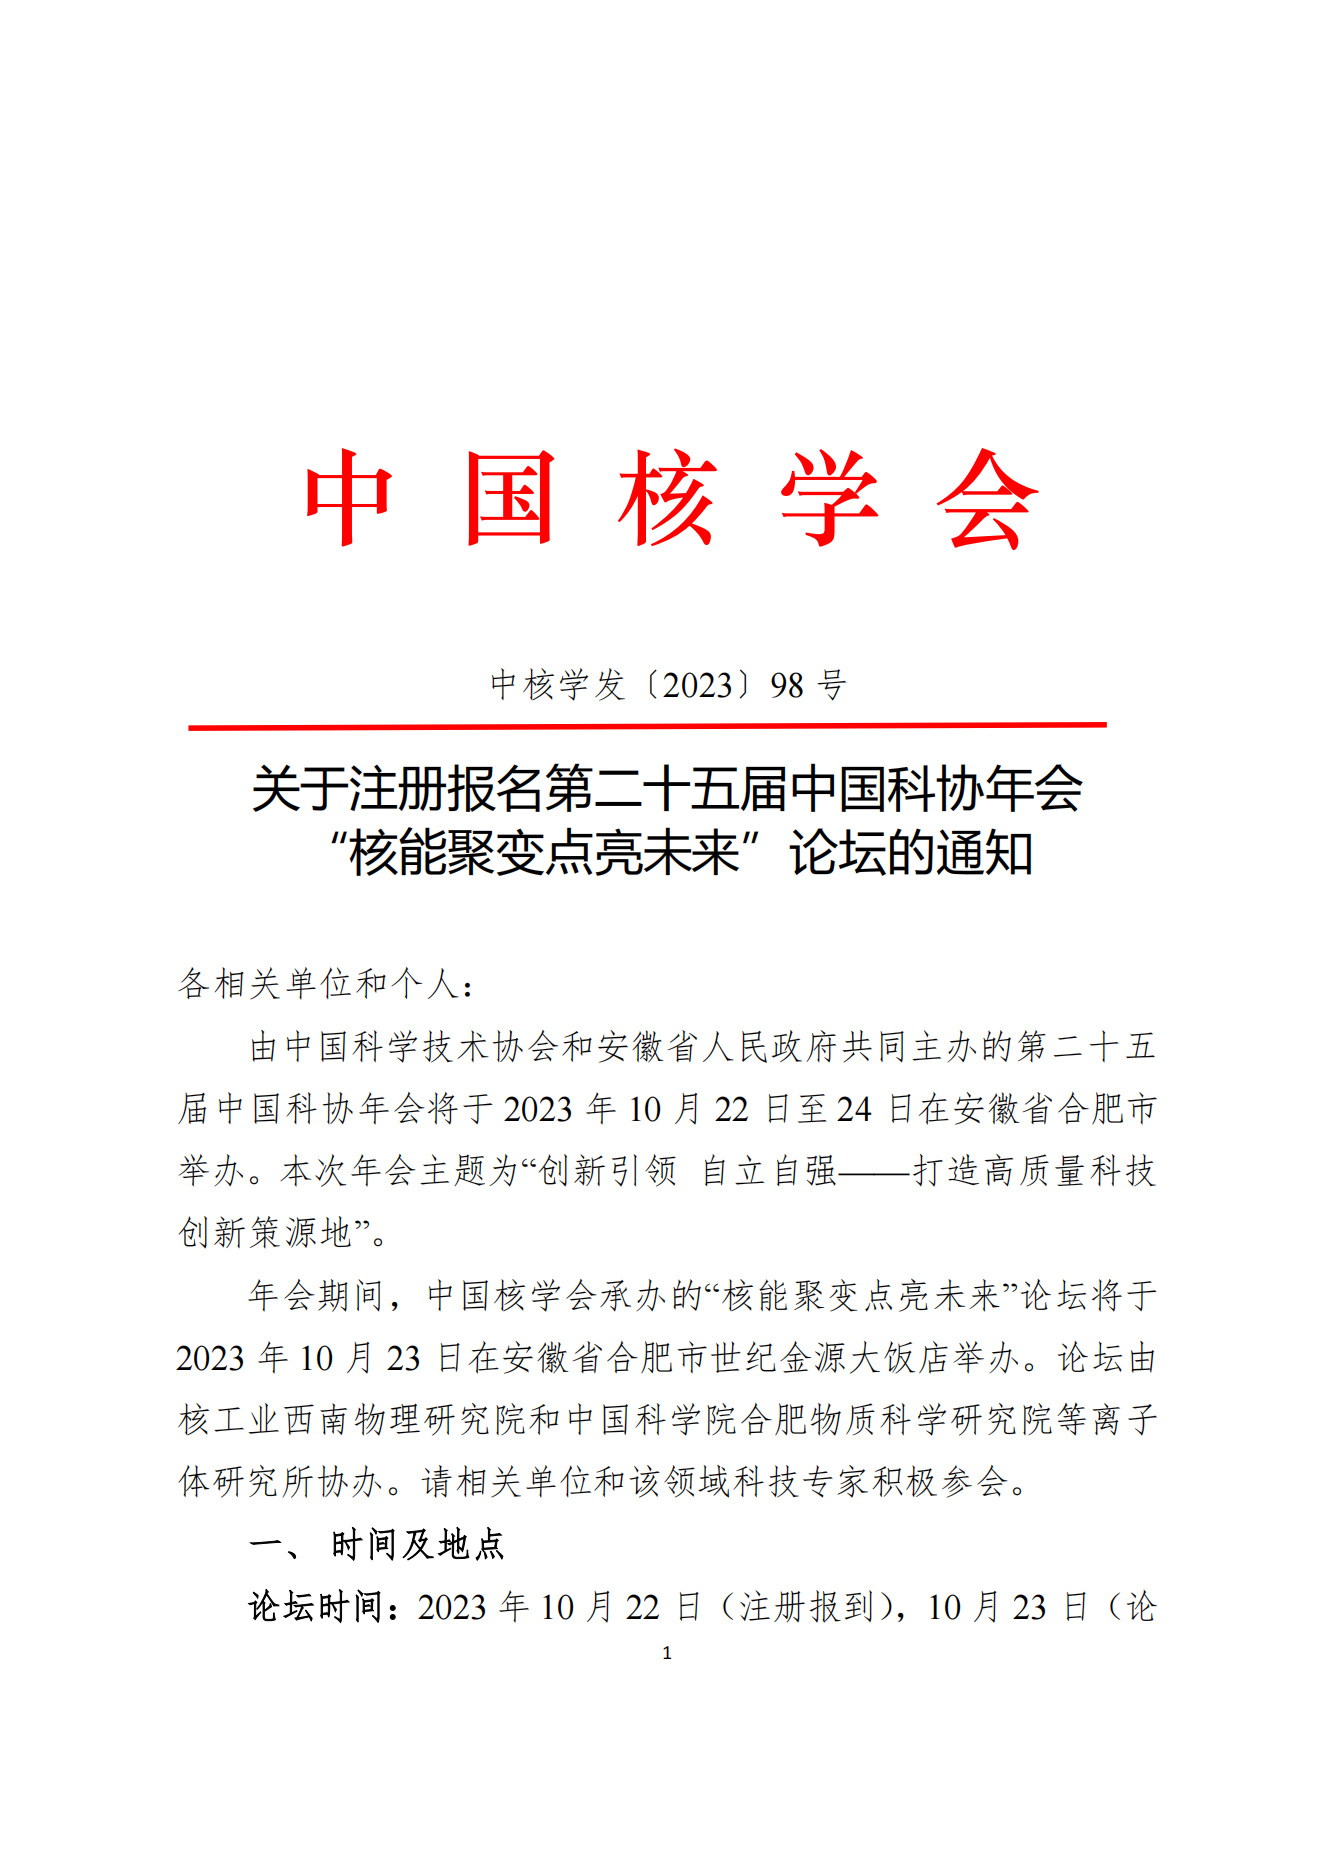 关于注册报名第二十五届中国科协年会“核能聚变点亮未来”论坛的通知(1)_00.png